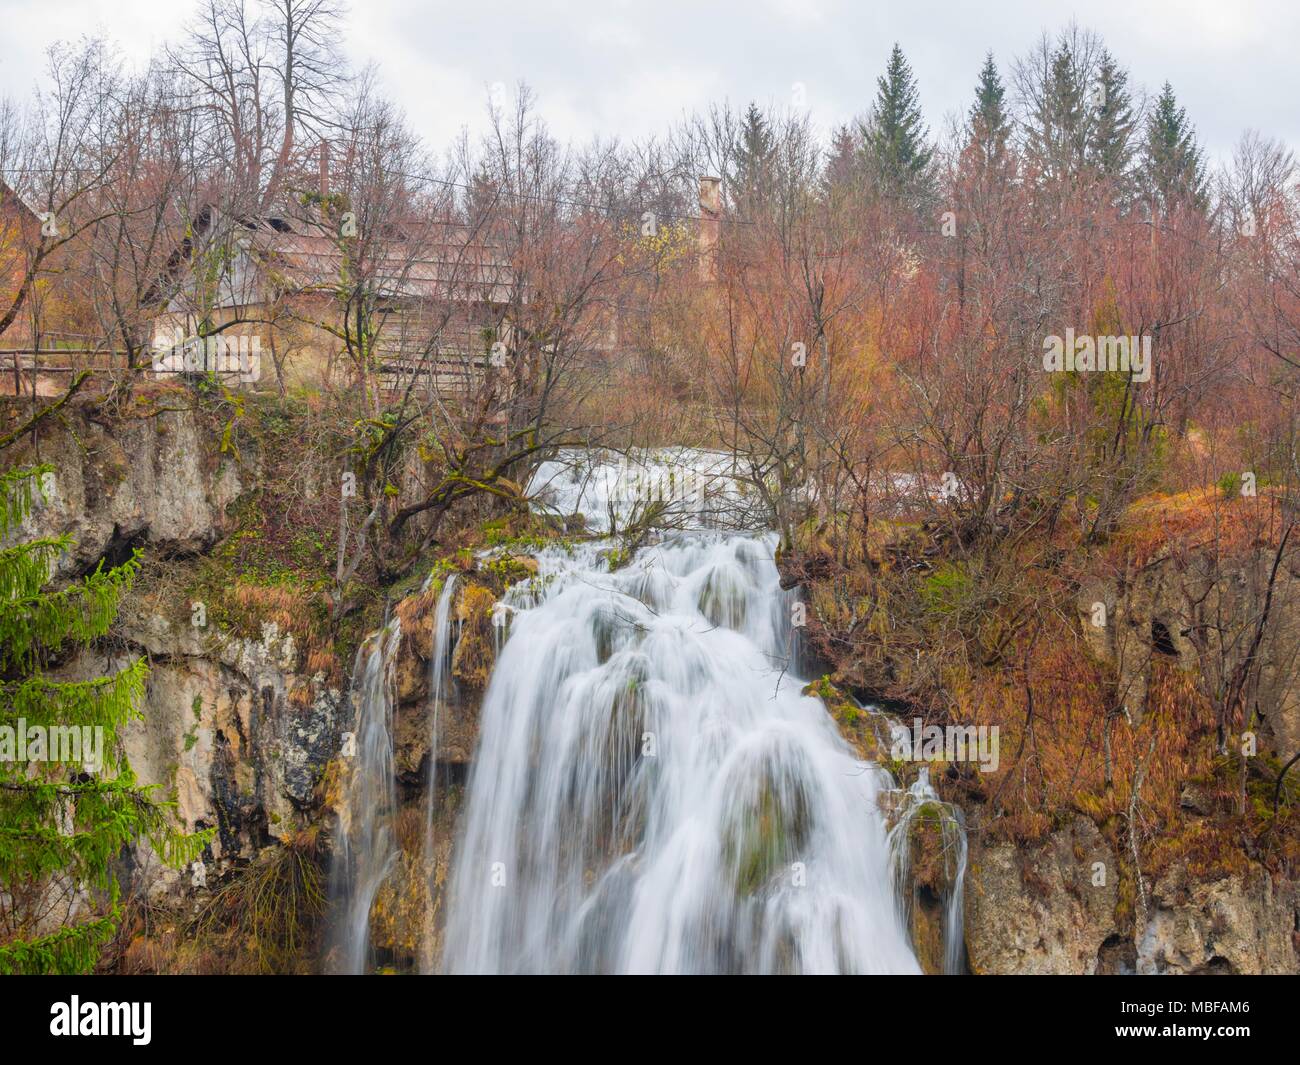 Plitvice lakes Plitvicka jezera national park in Croatia Big waterfall Veliki slap Stock Photo